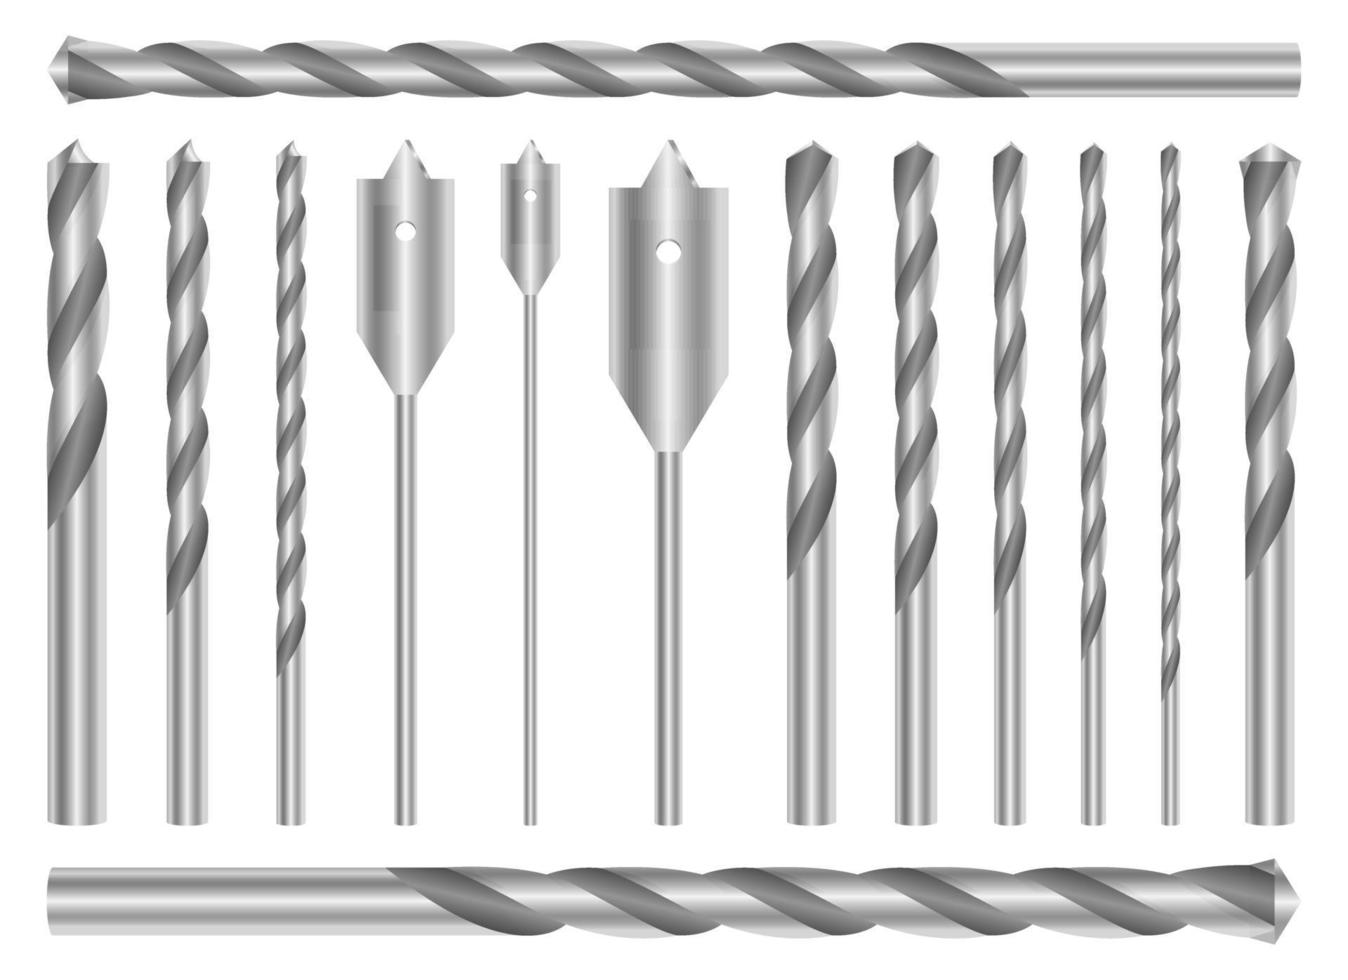 metalen boor set vector illustratie ontwerpset geïsoleerd op een witte achtergrond